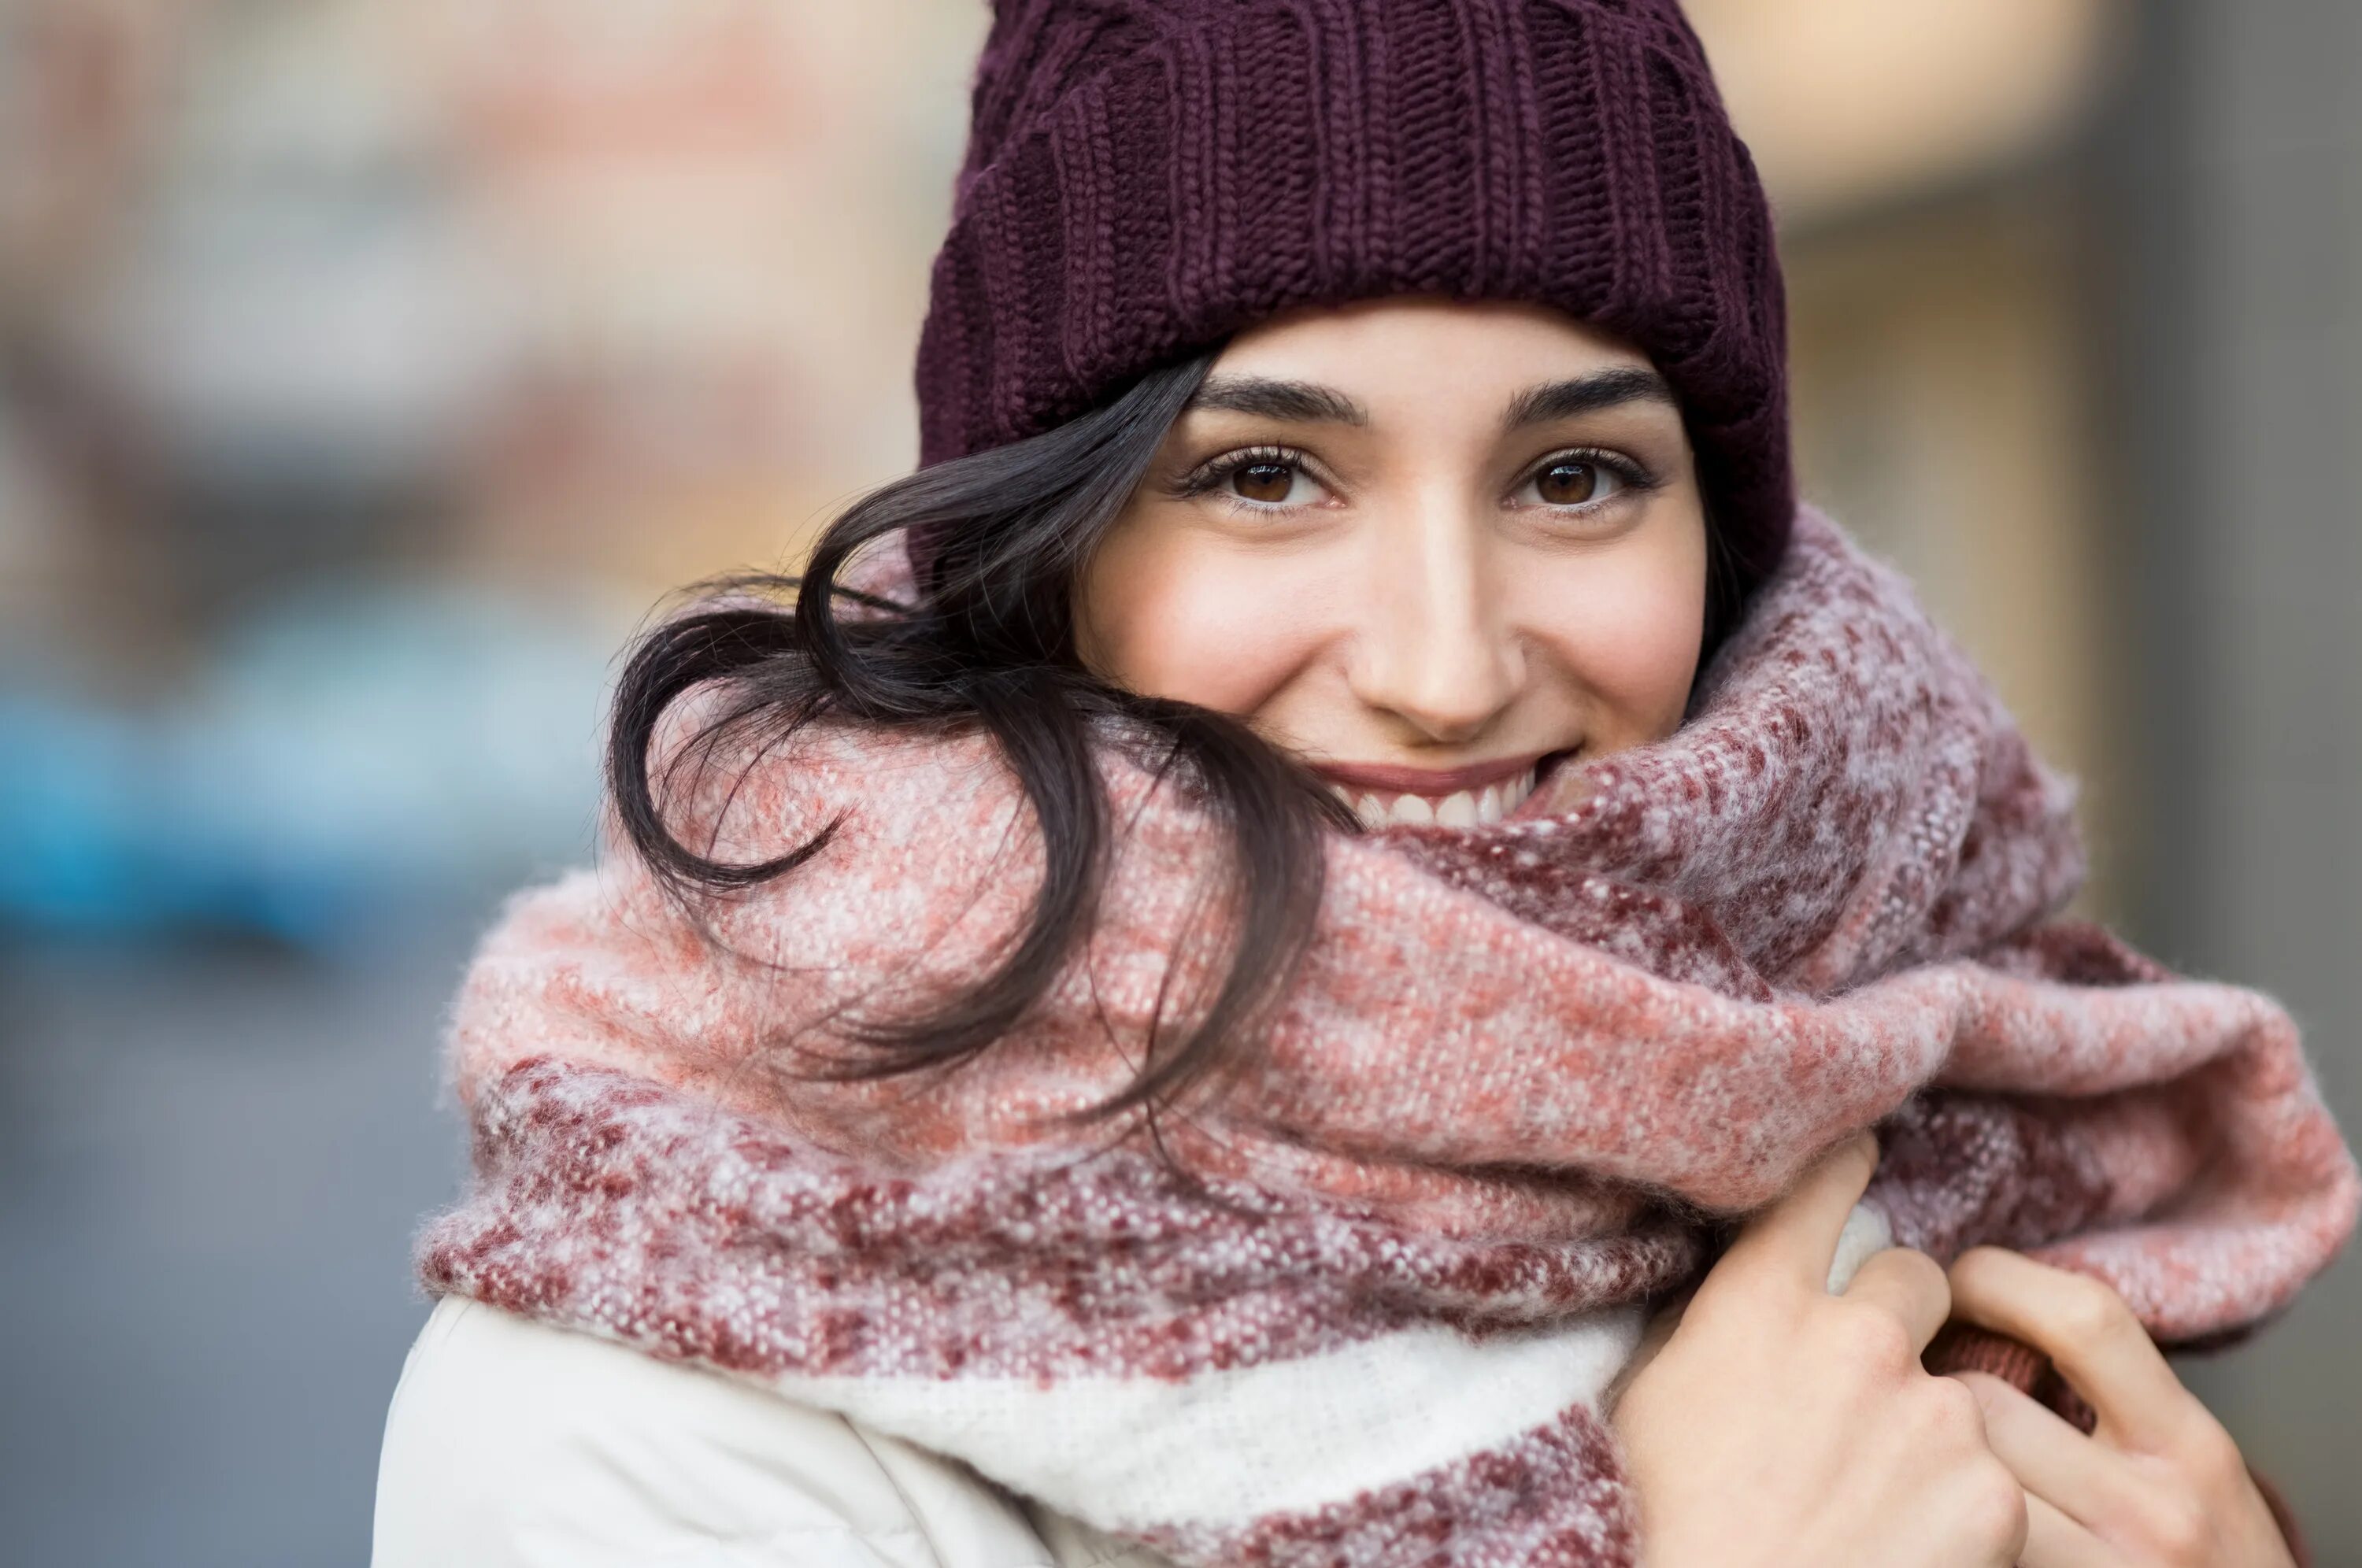 Тепло одеться зимой. Девушка в шарфе зимой. Девушка в шапке и шарфе. Шапка шарф. Девушка в шапке зимой.